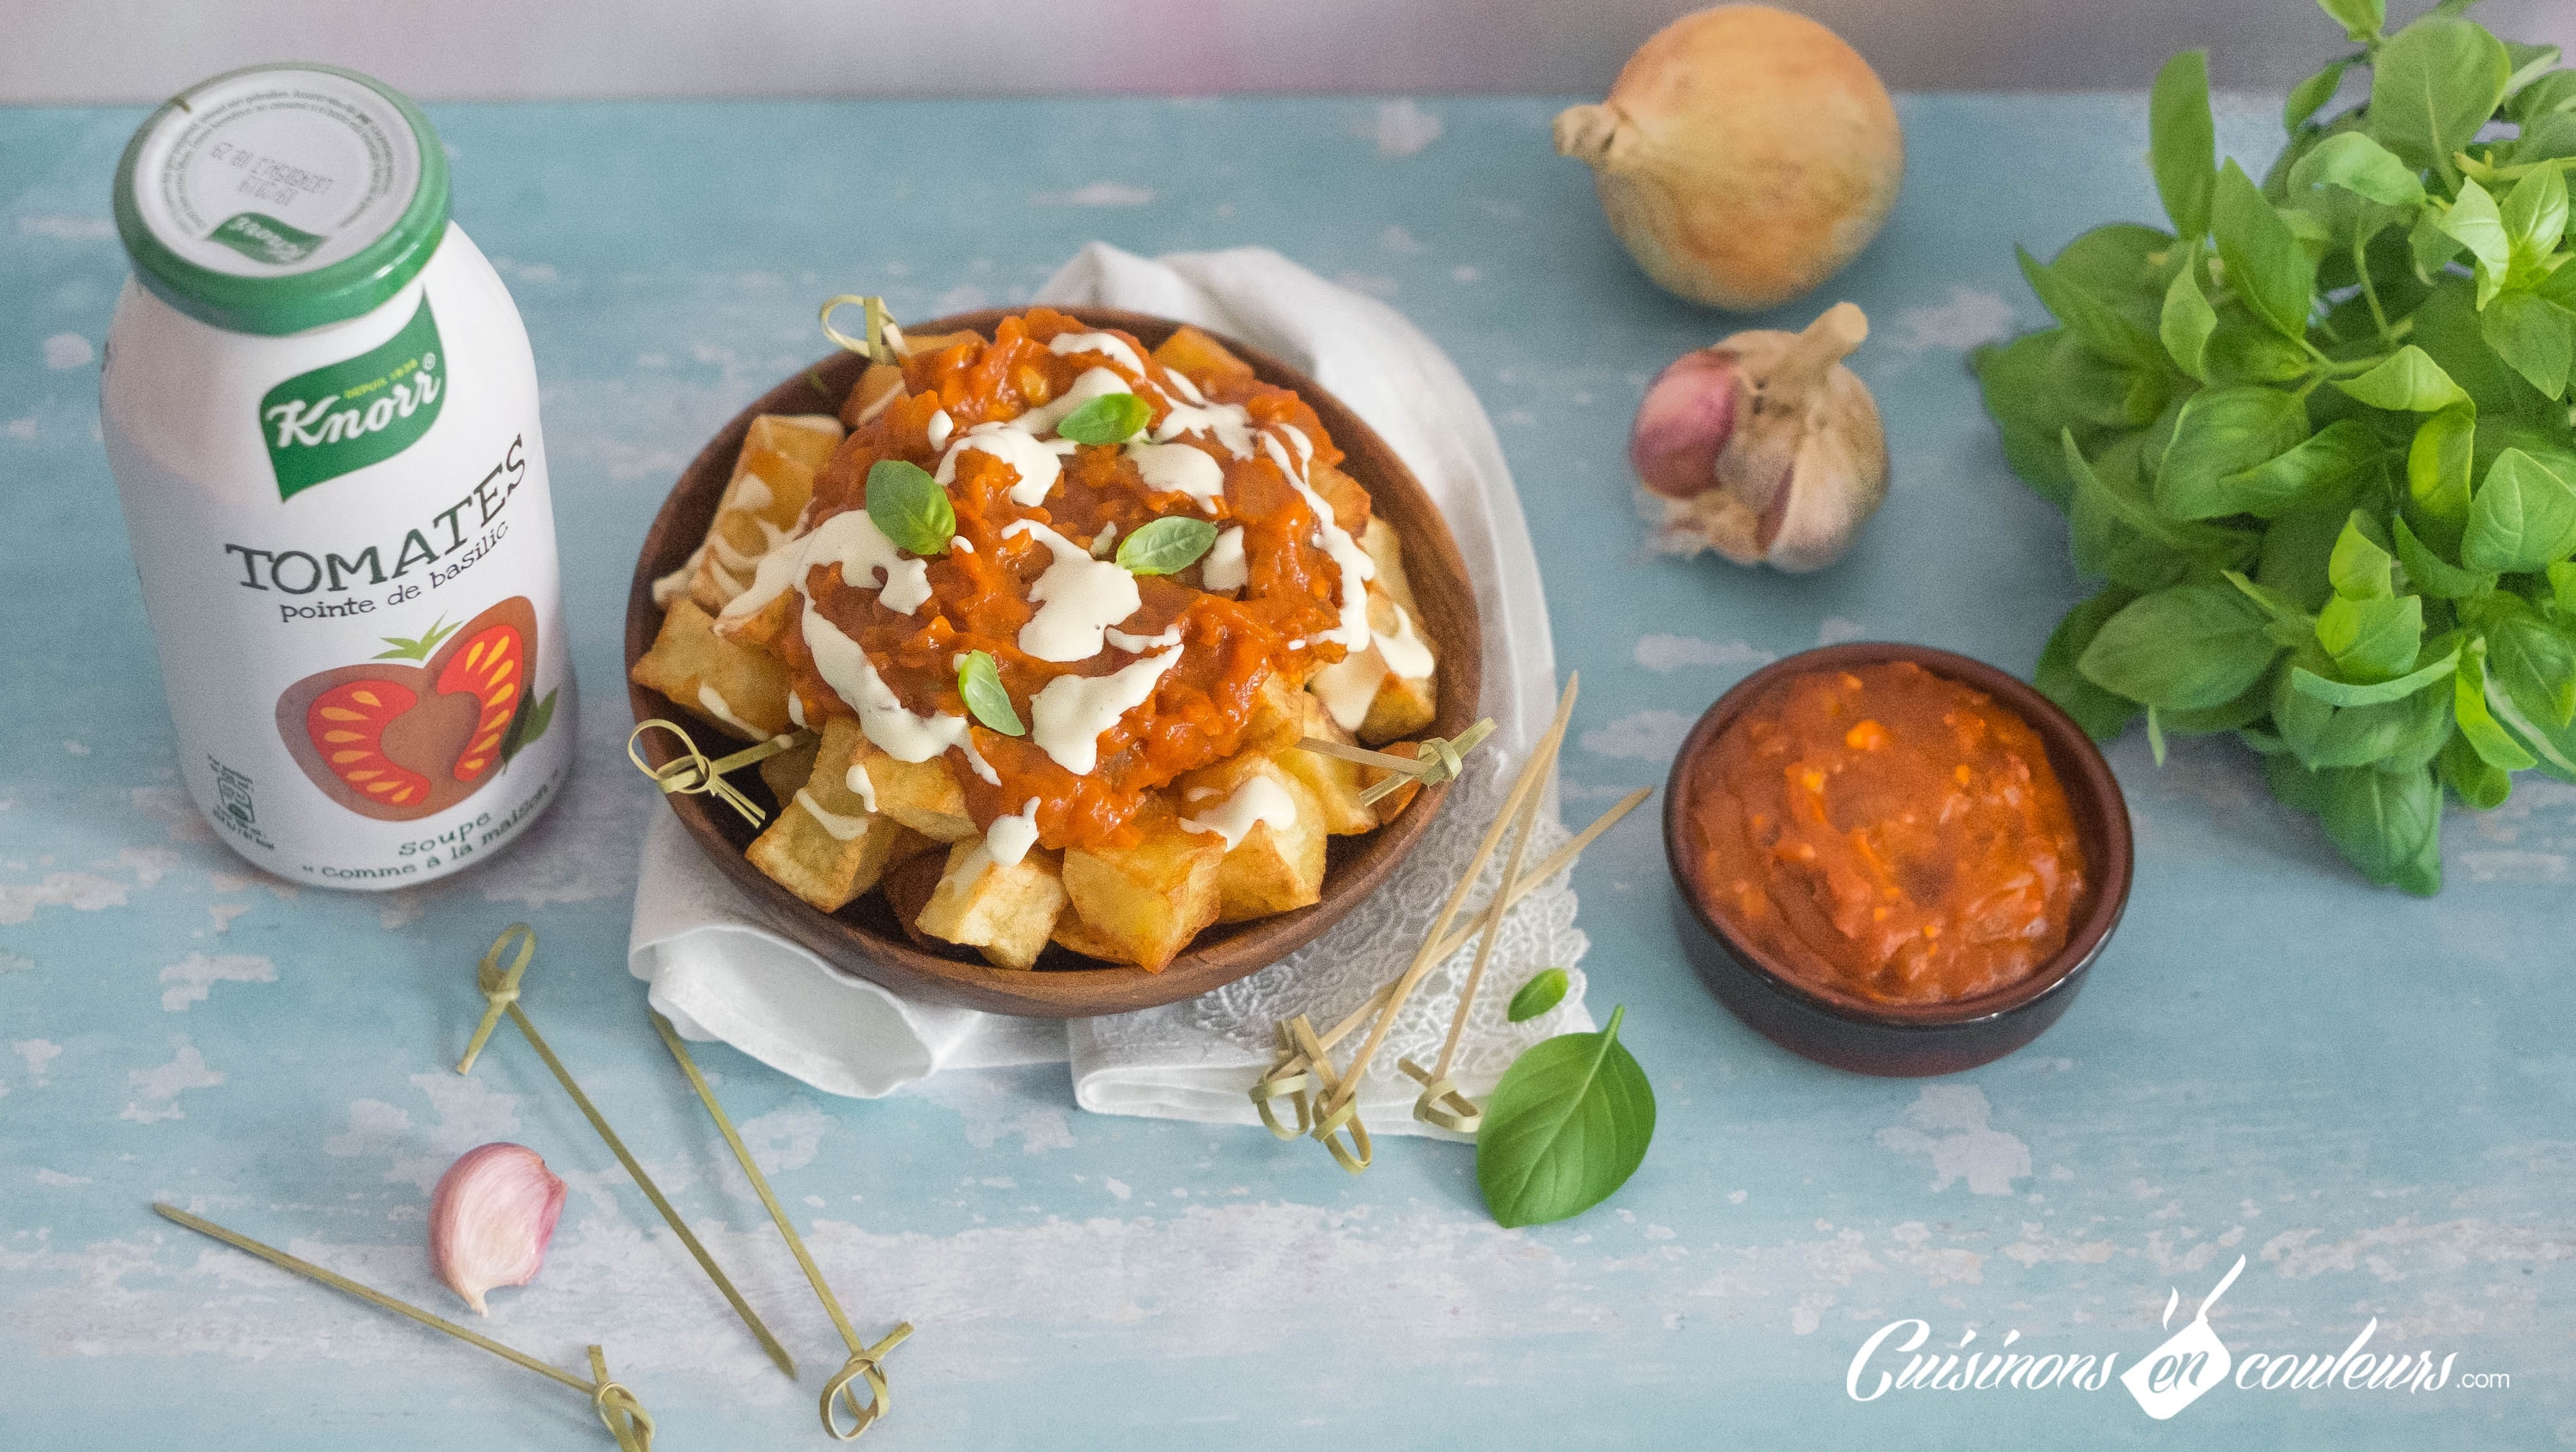 Patatas Bravas Soupe Knorr® « comme à la maison », Tomates pointe de basilic by Cuisinons en couleurs